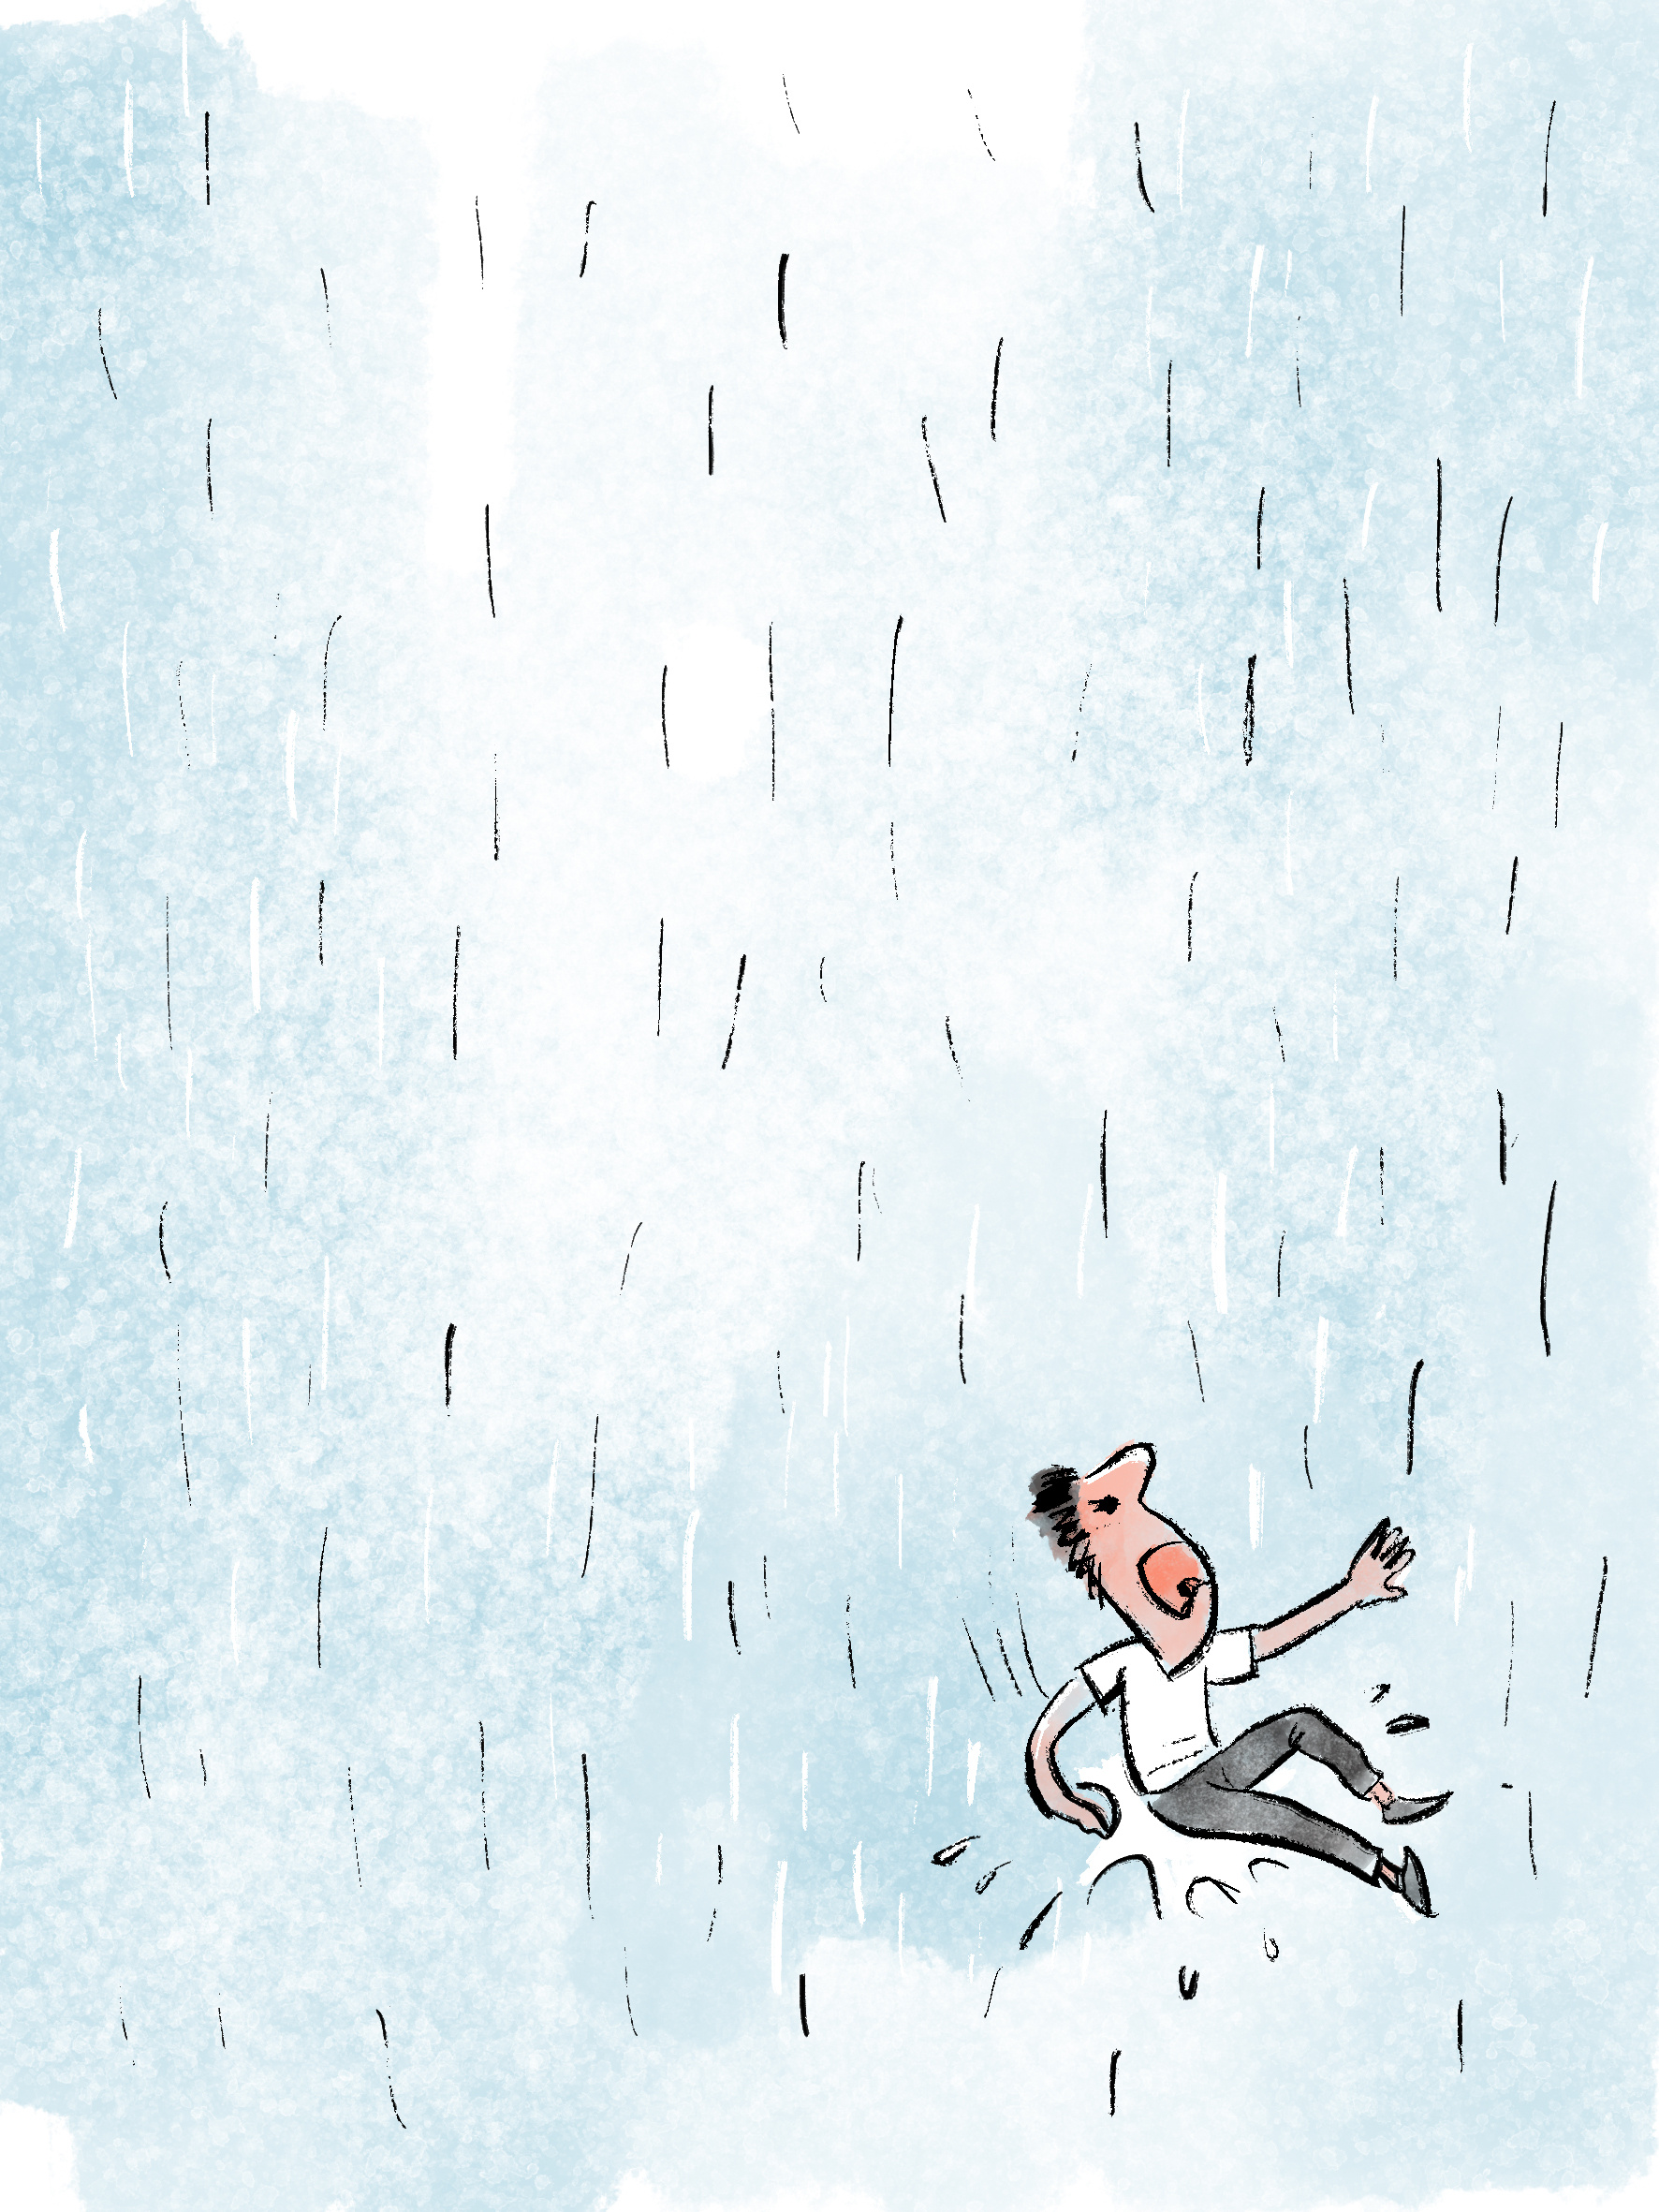 漫画:雨一直下 心情很复杂